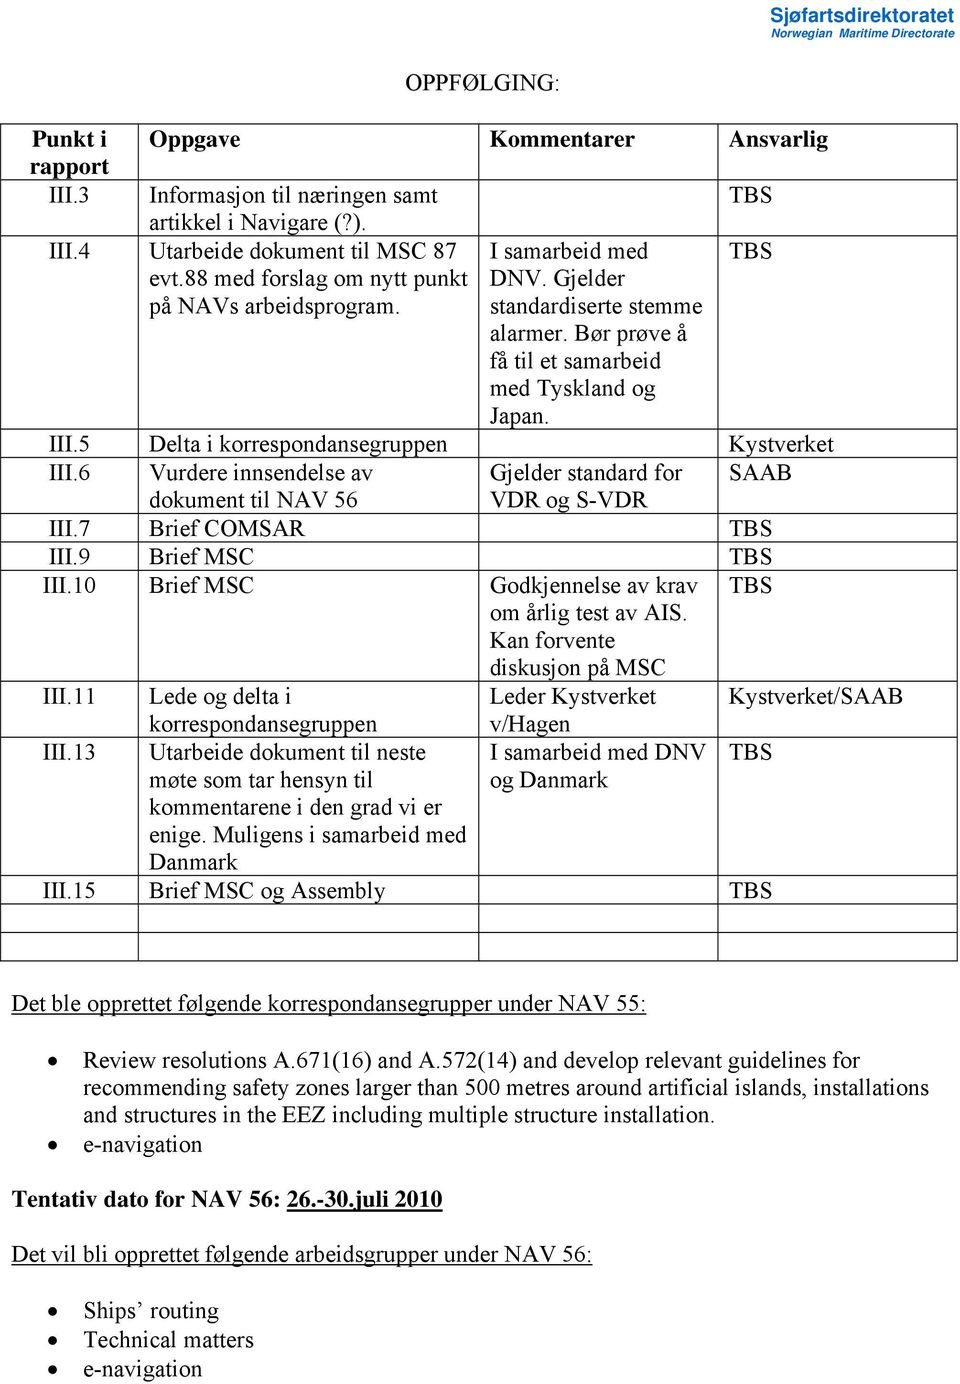 5 Delta i korrespondansegruppen Kystverket III.6 Vurdere innsendelse av Gjelder standard for SAAB dokument til NAV 56 VDR og S-VDR III.7 Brief COMSAR TBS III.9 Brief MSC TBS III.